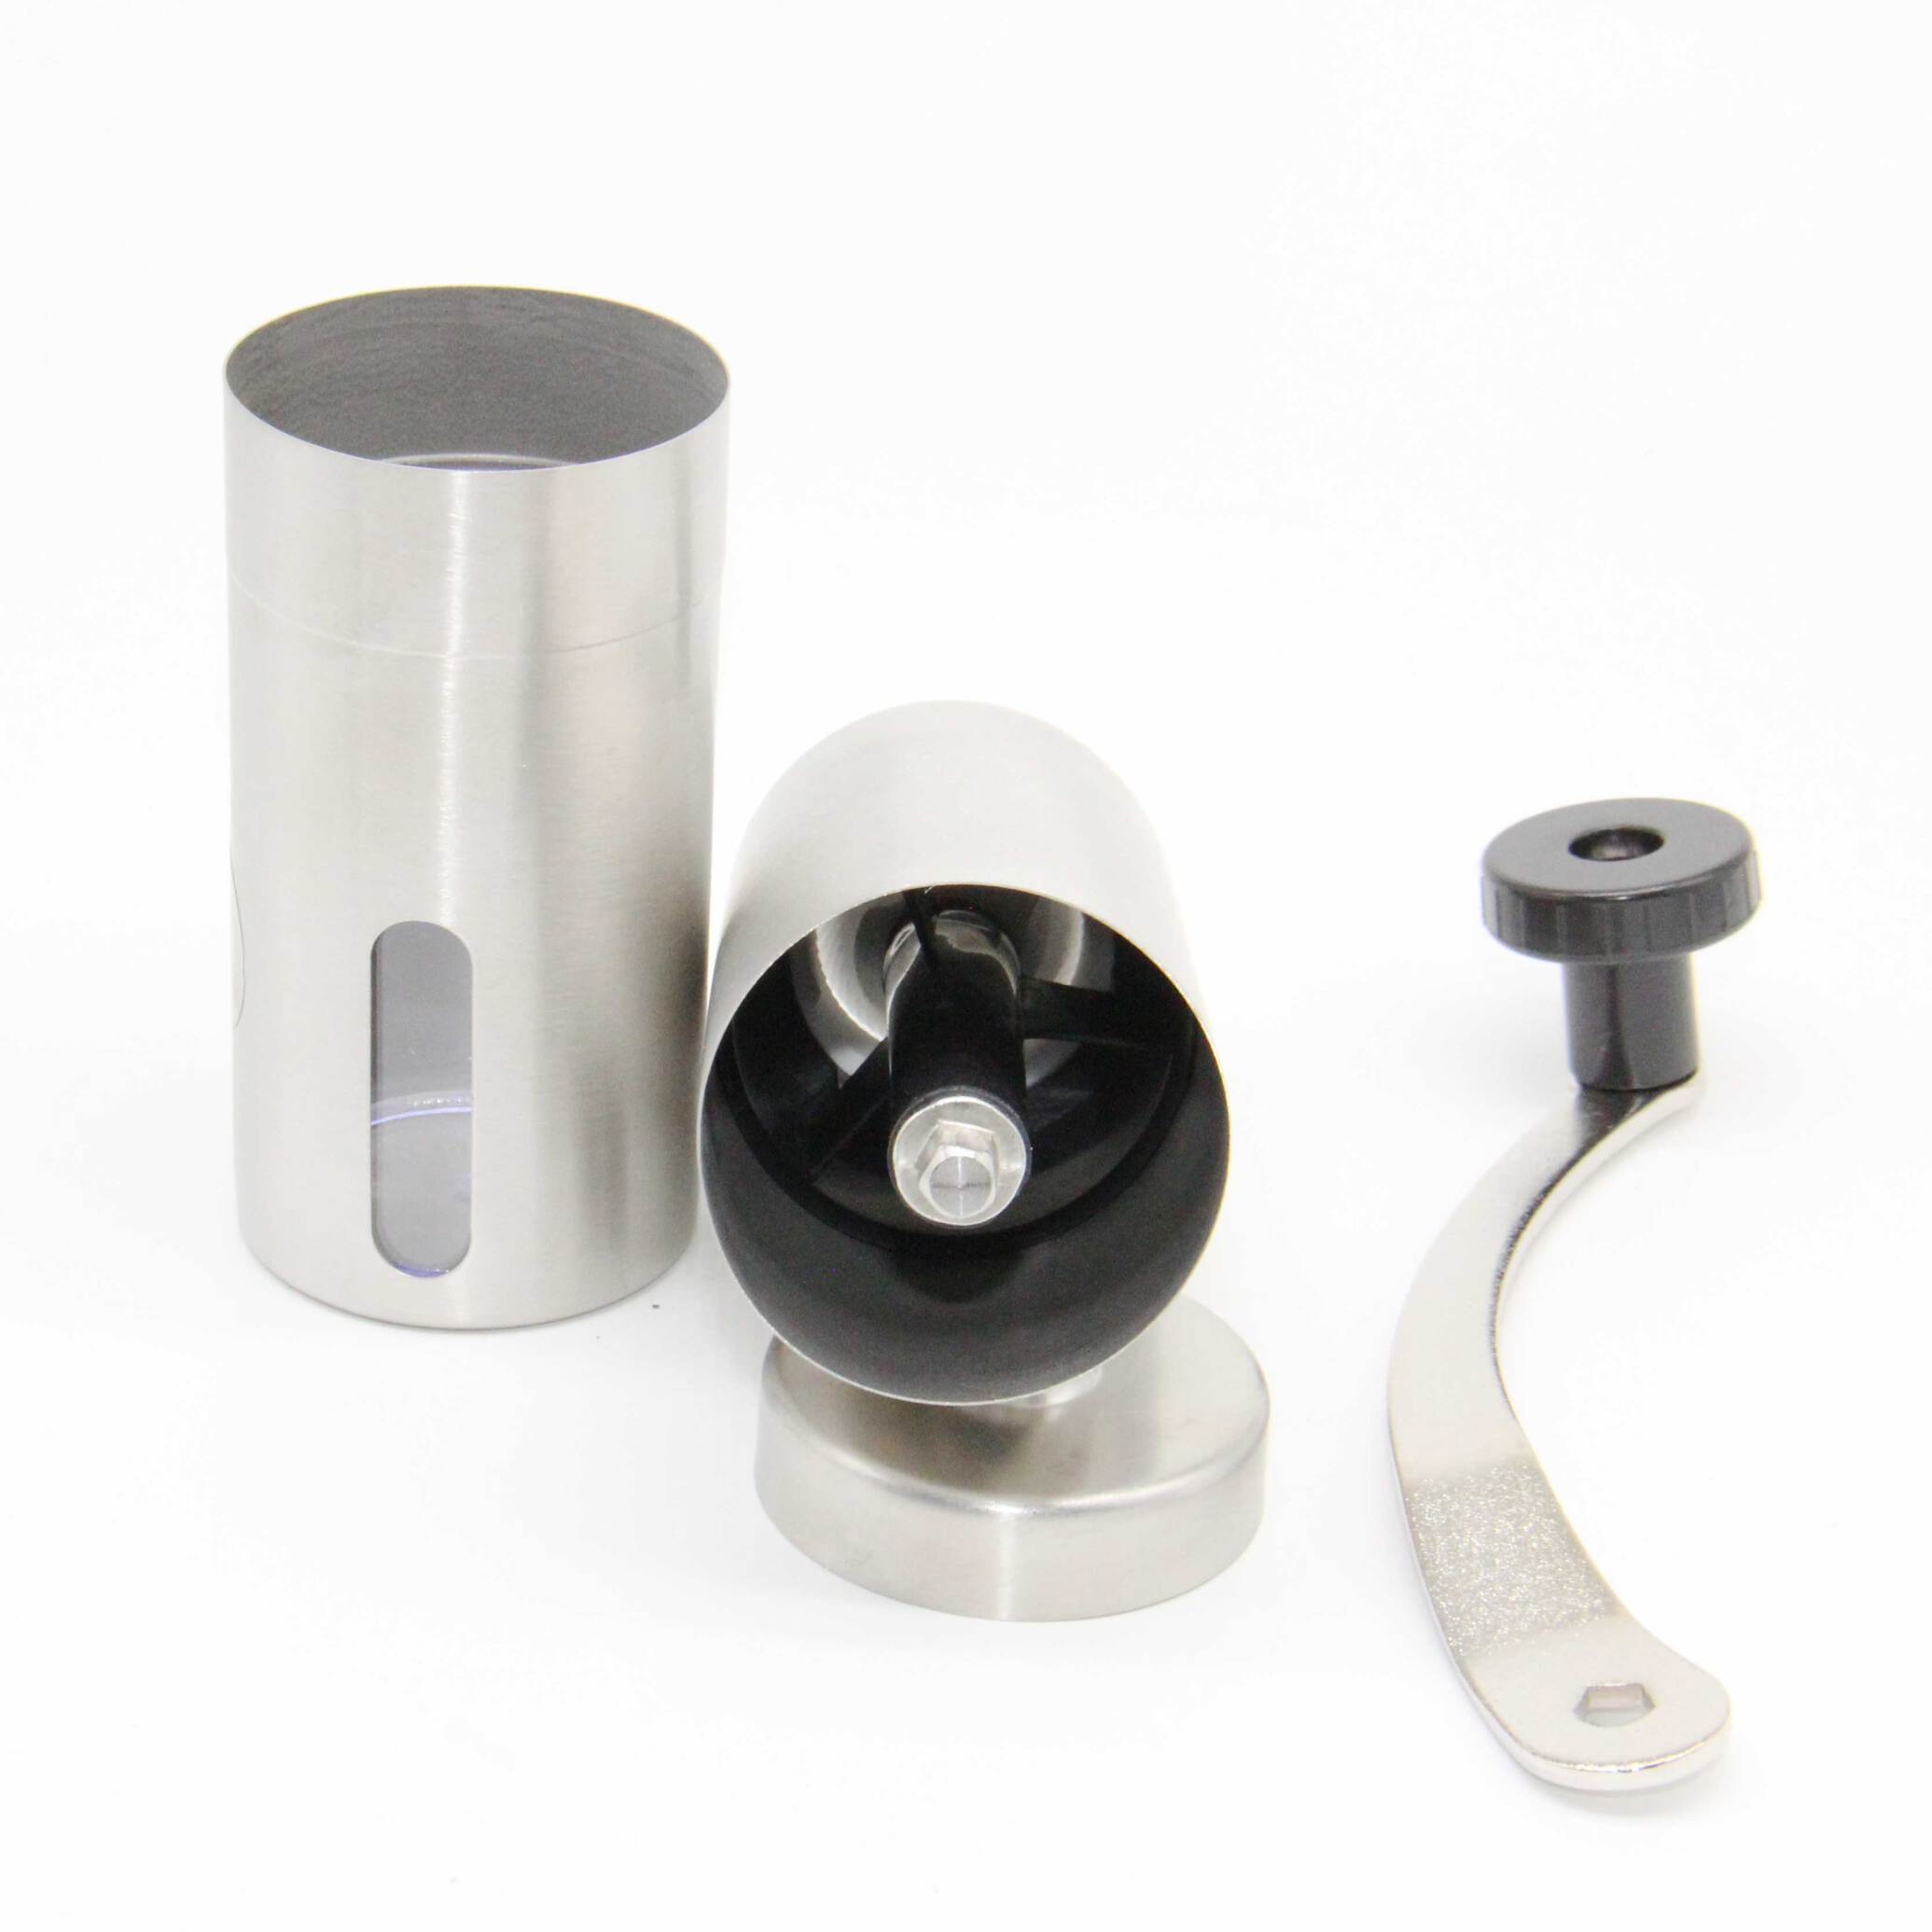  آسیاب قهوه دستی فلزی | coffee grinder | آسیاب قهوه 